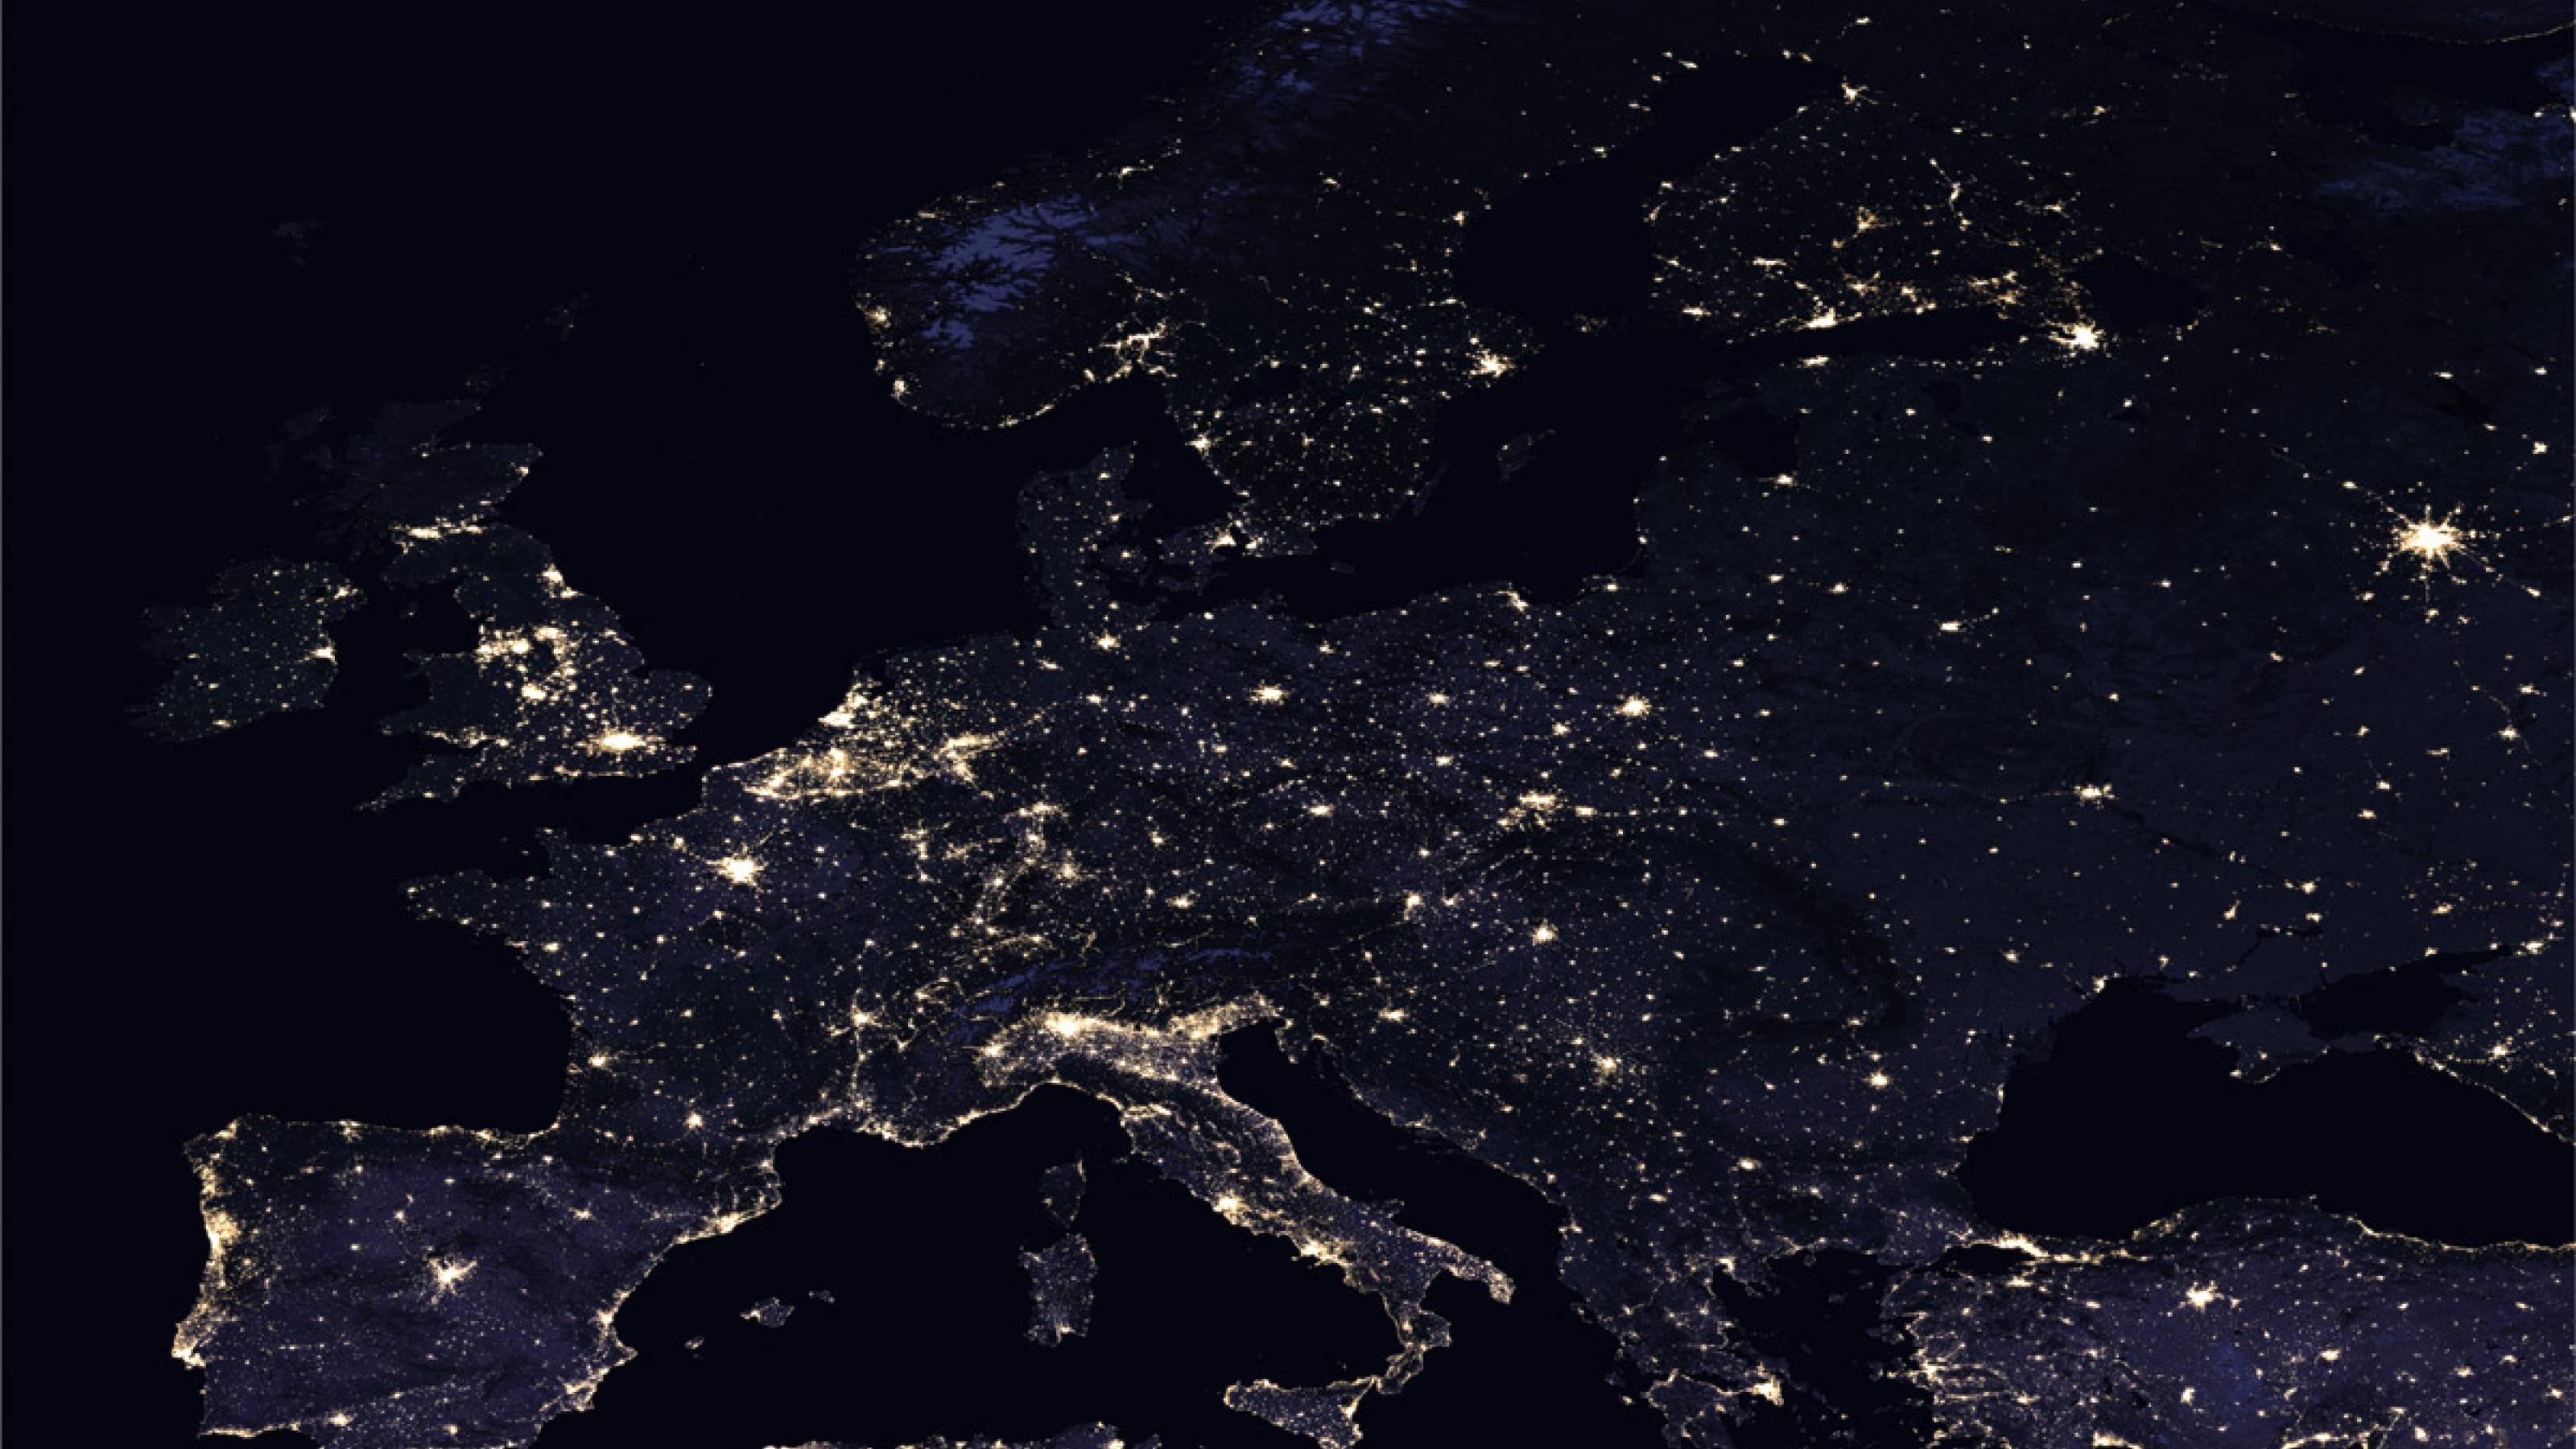 Europa von oben, aufgenommen bei Nacht. Man sieht Lichter, die leuchten.